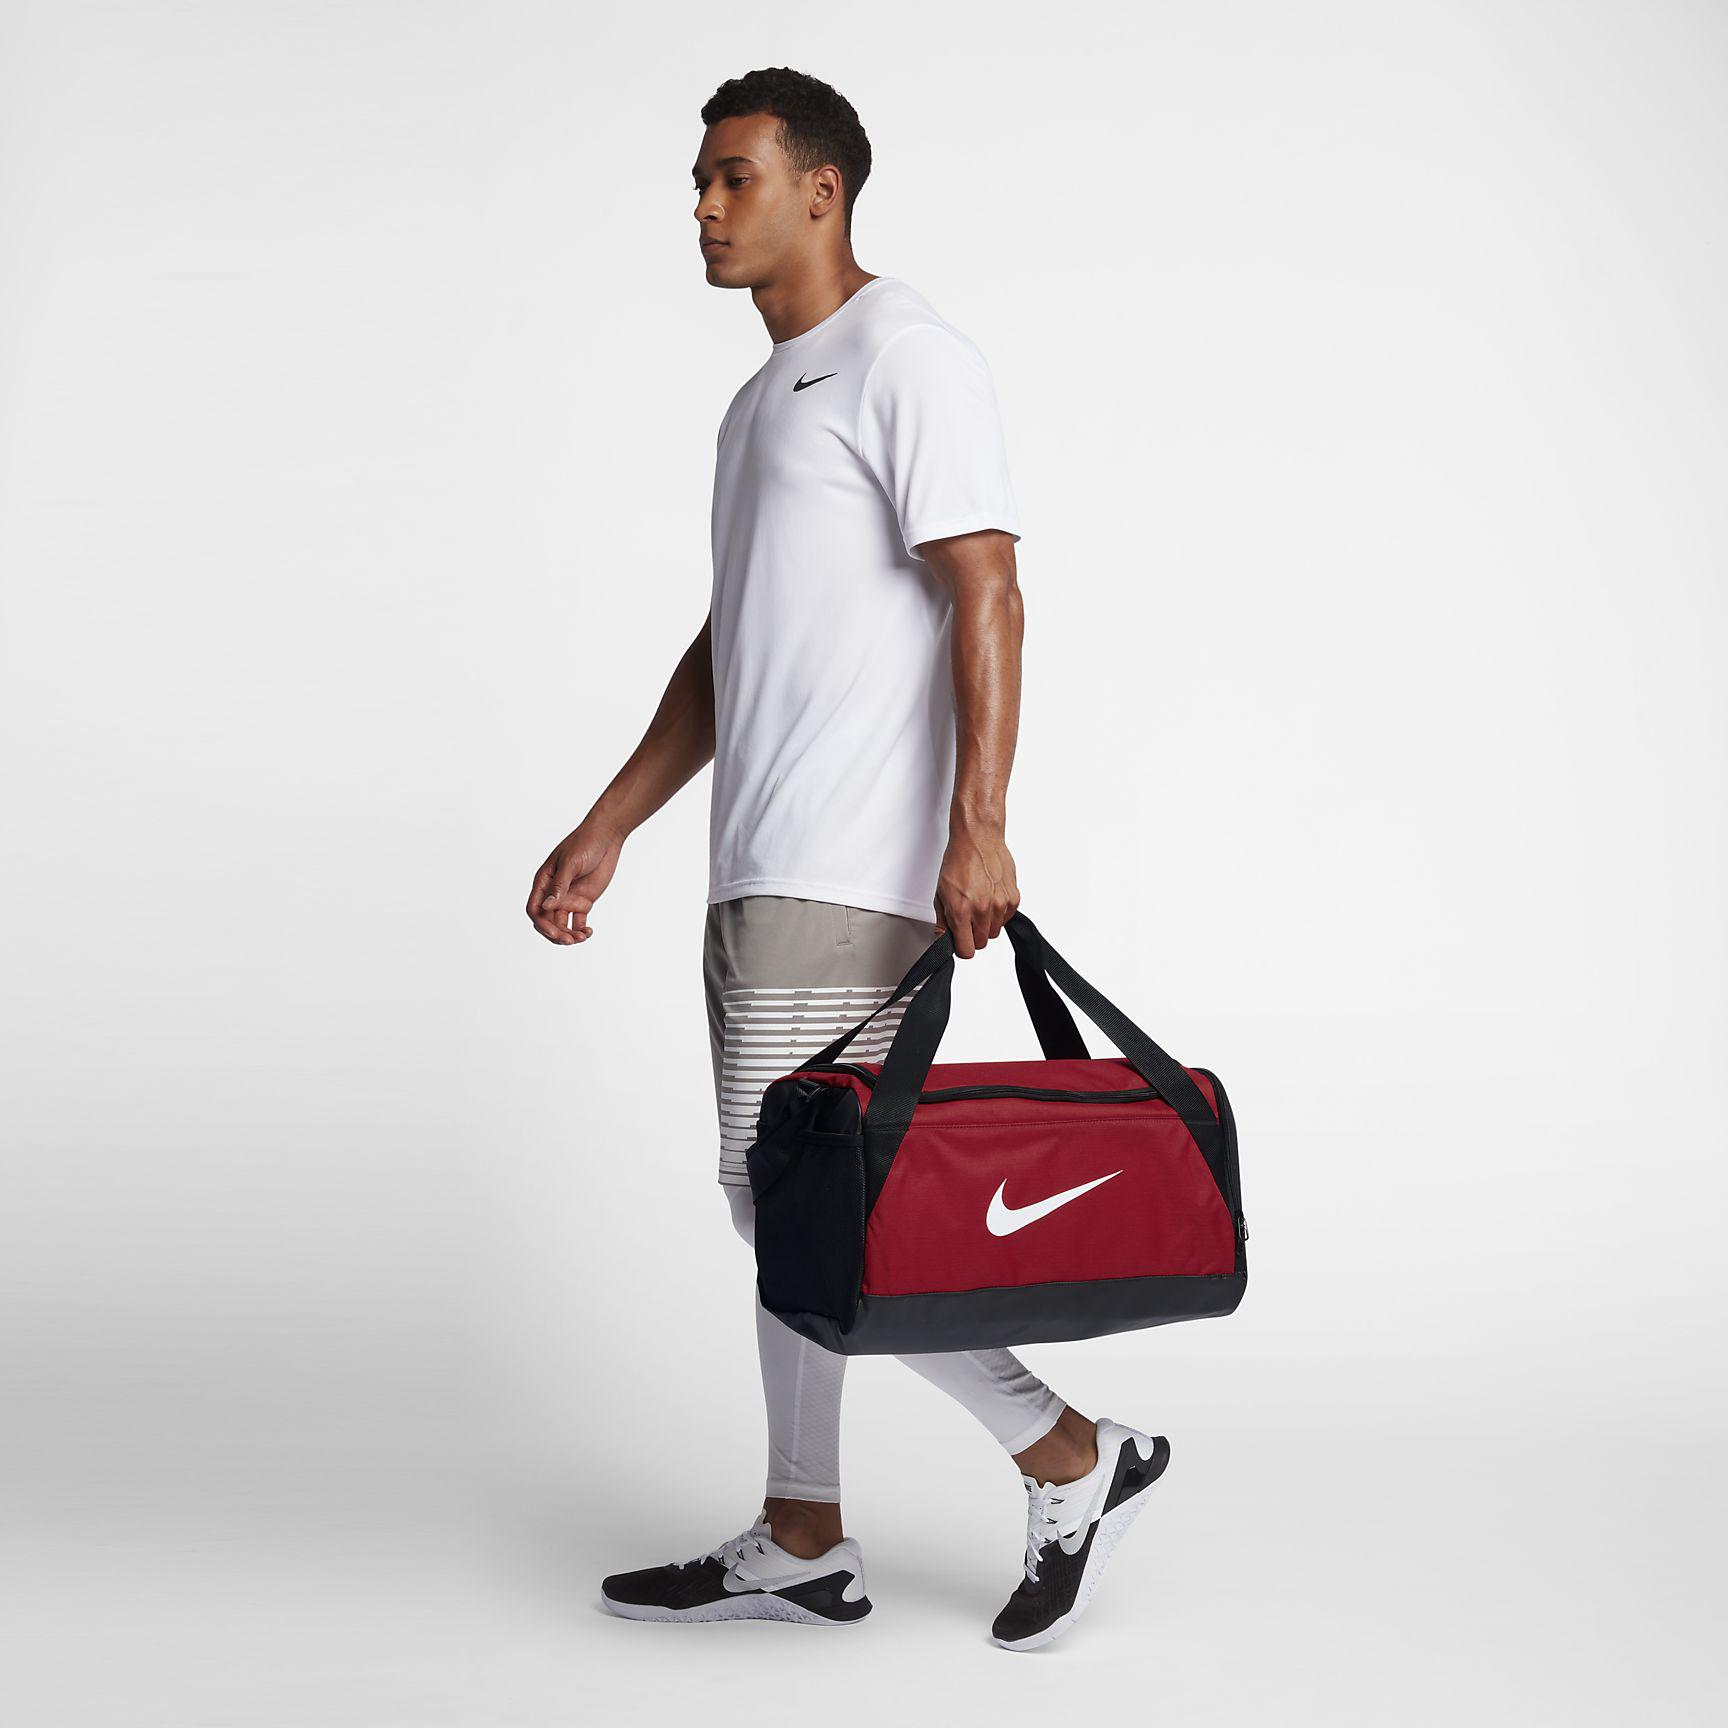 Nike Brasilia Small Training Duffel Bag - University Red/Black/White - nrd.kbic-nsn.gov